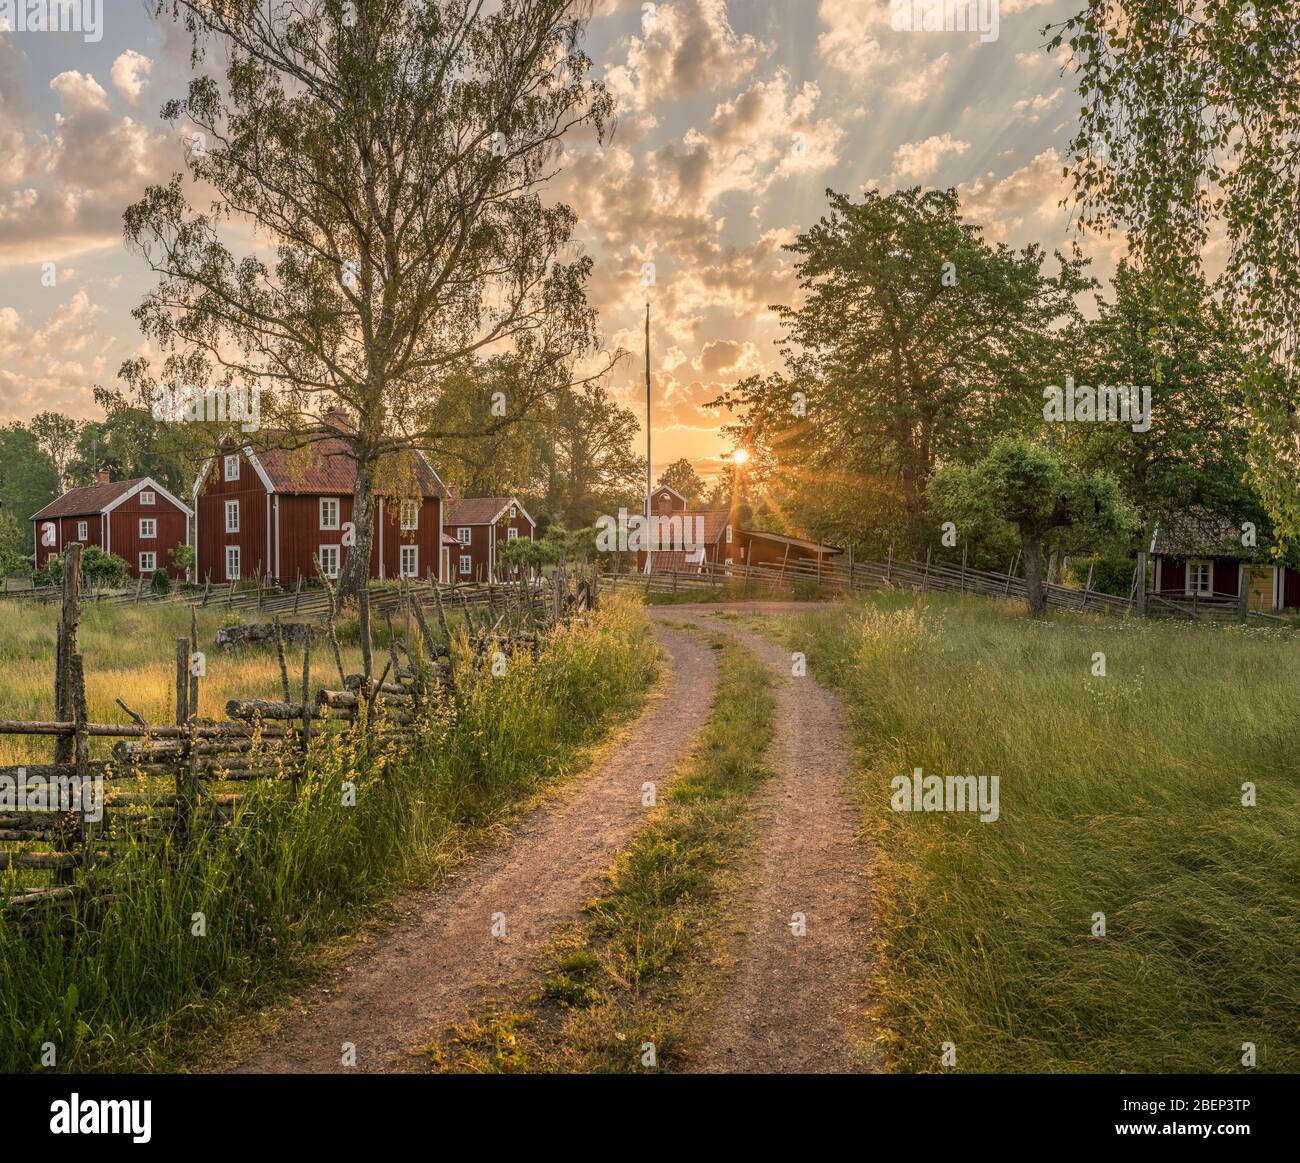 Petite route de campagne et vieux cottages traditionnels rouges au lever du soleil dans un paysage rural, le village Stensjo by. Oskarshamn, Smaland, Suède, Scandinavie Banque D'Images